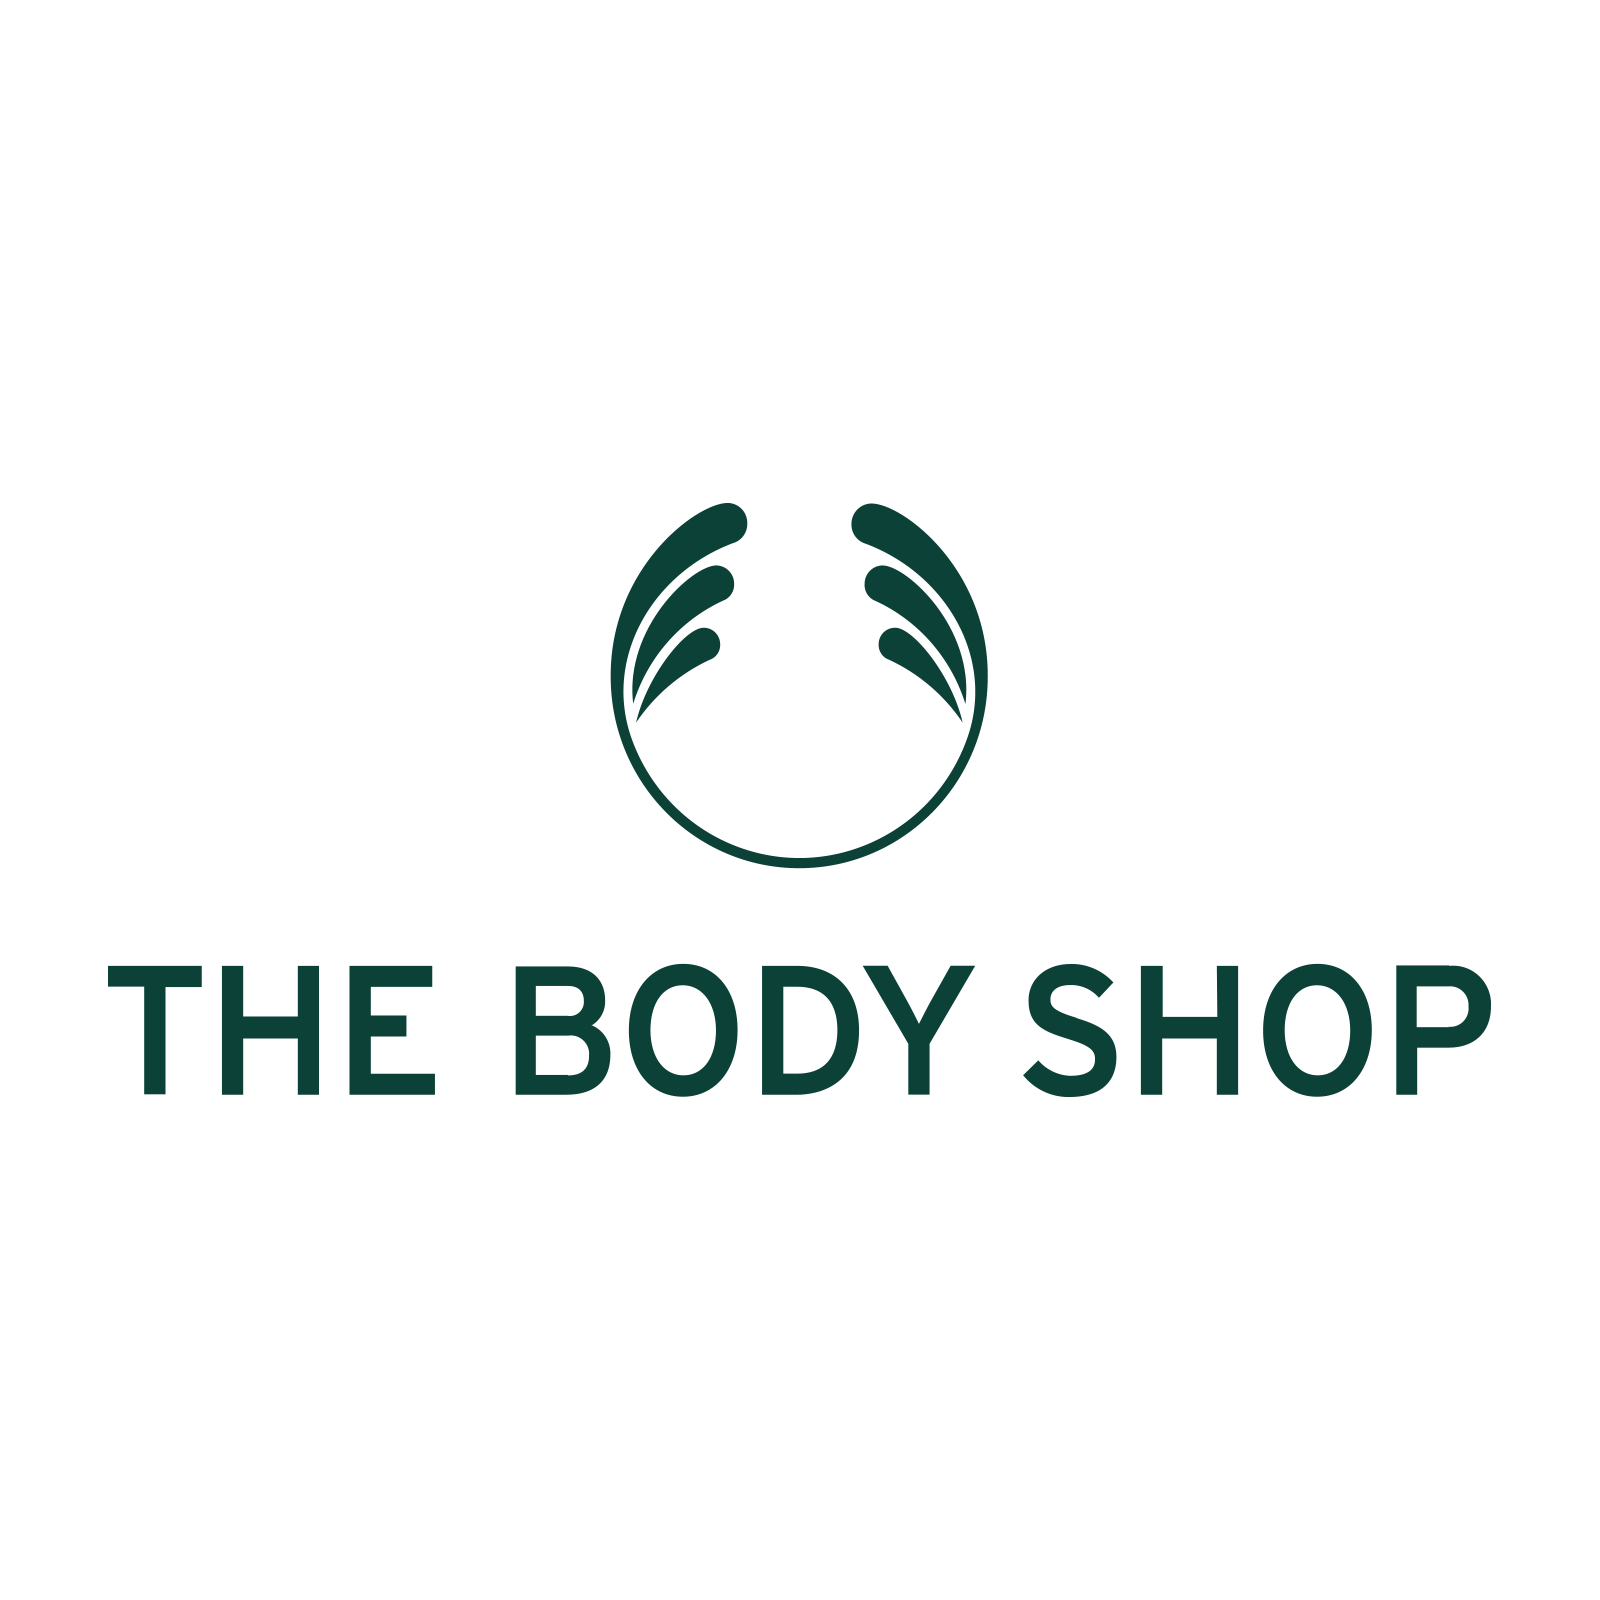 The Body Shop USA_logo